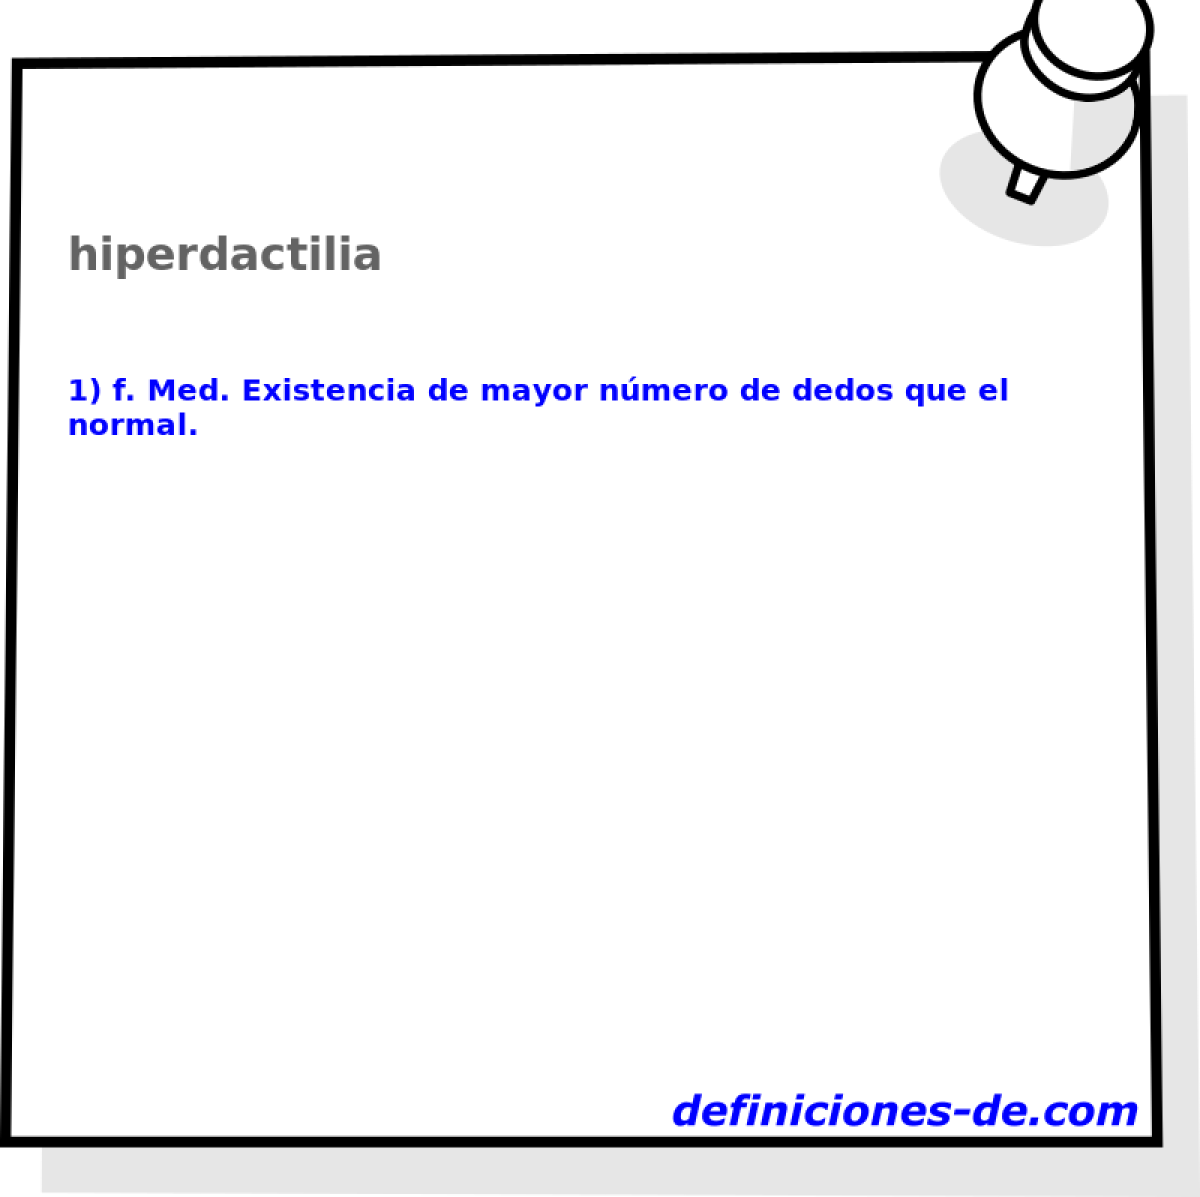 hiperdactilia 